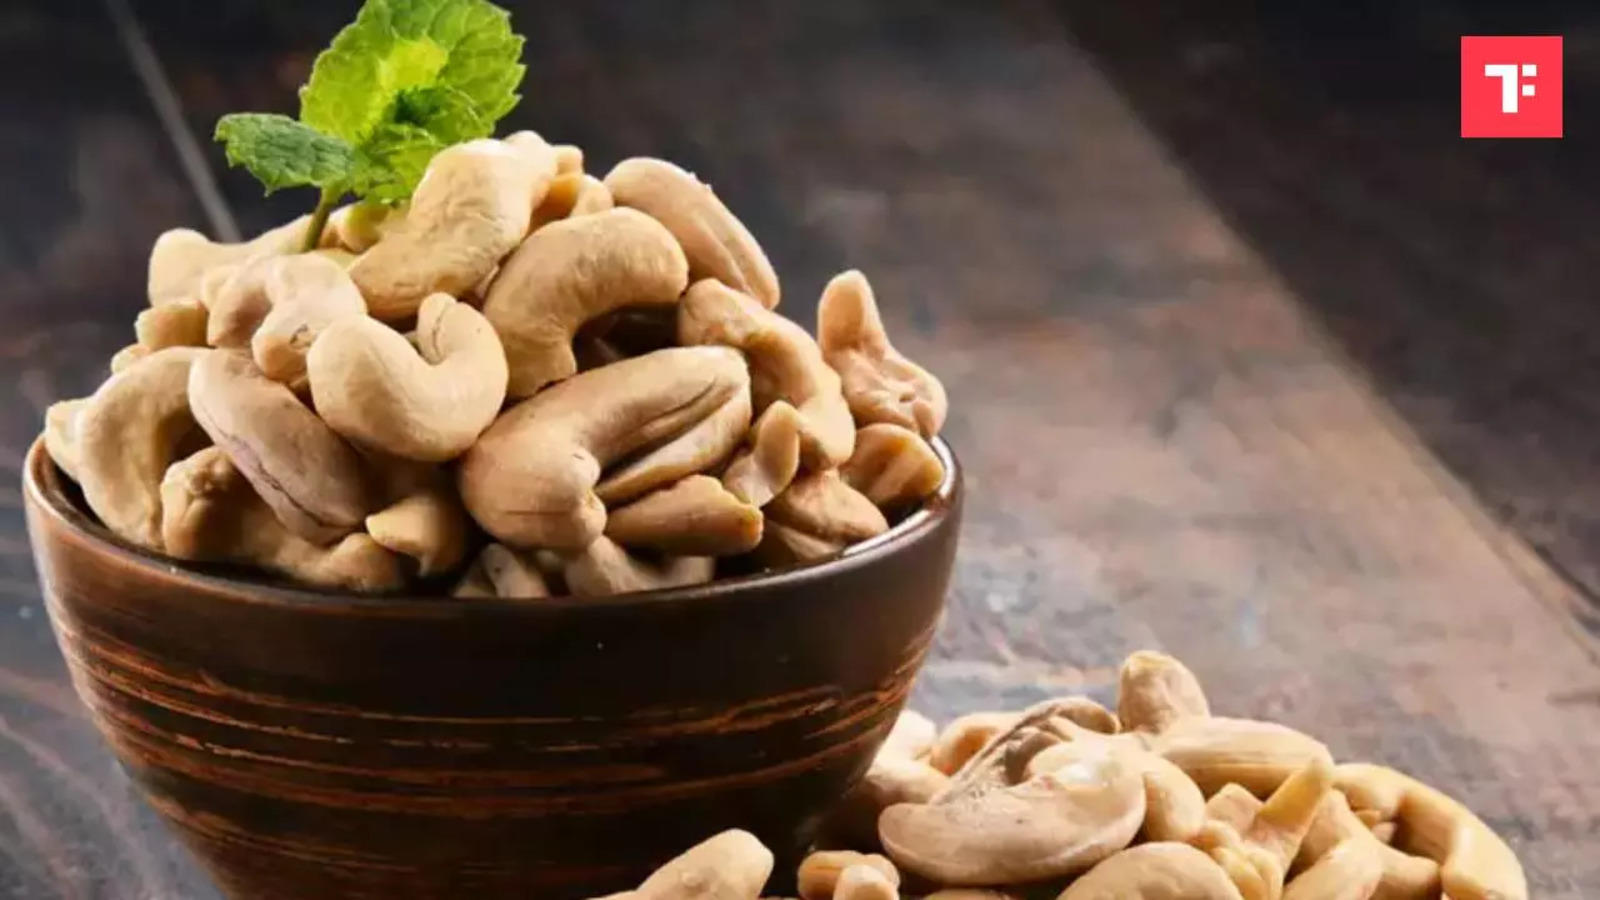 watch side effects of cashew nuts